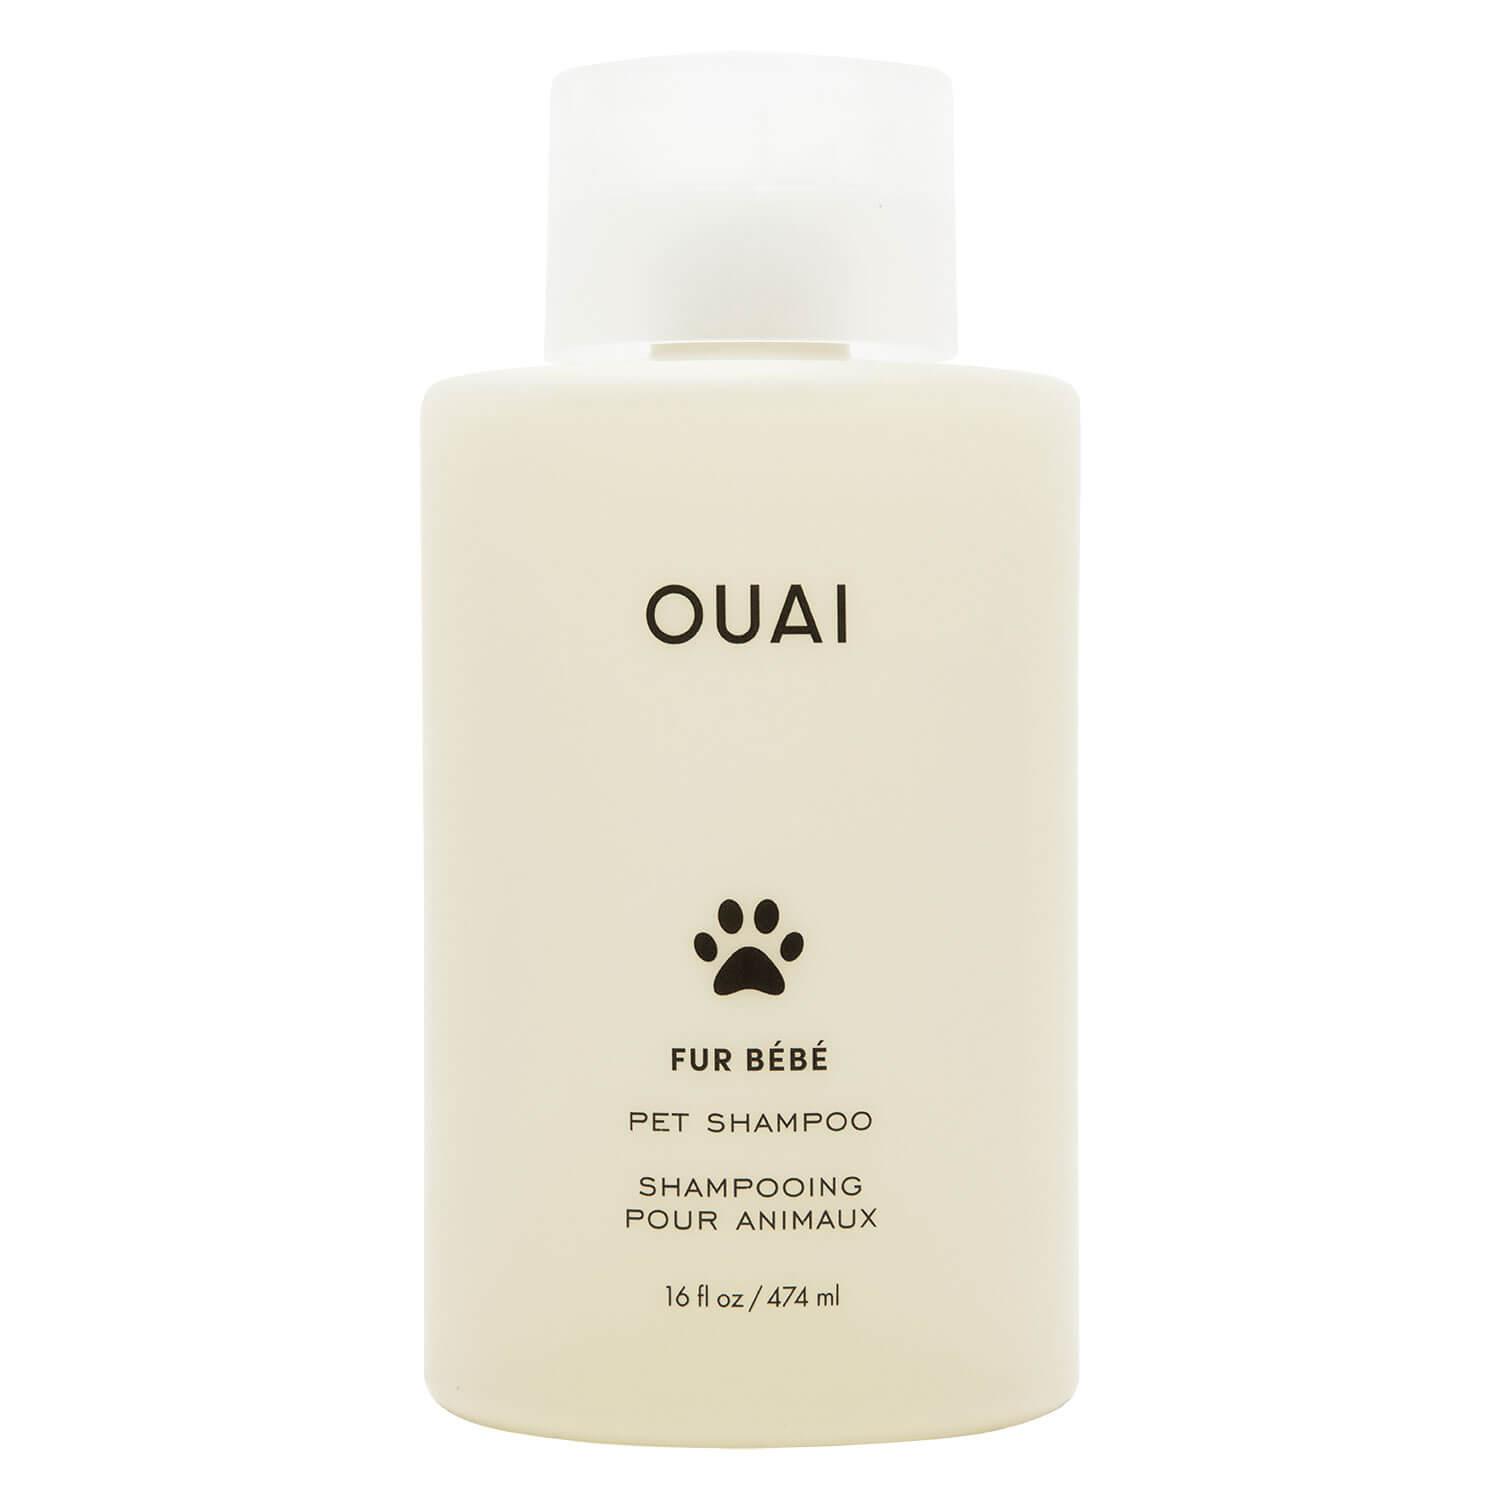 OUAI - Fur Bébé Pet Shampoo